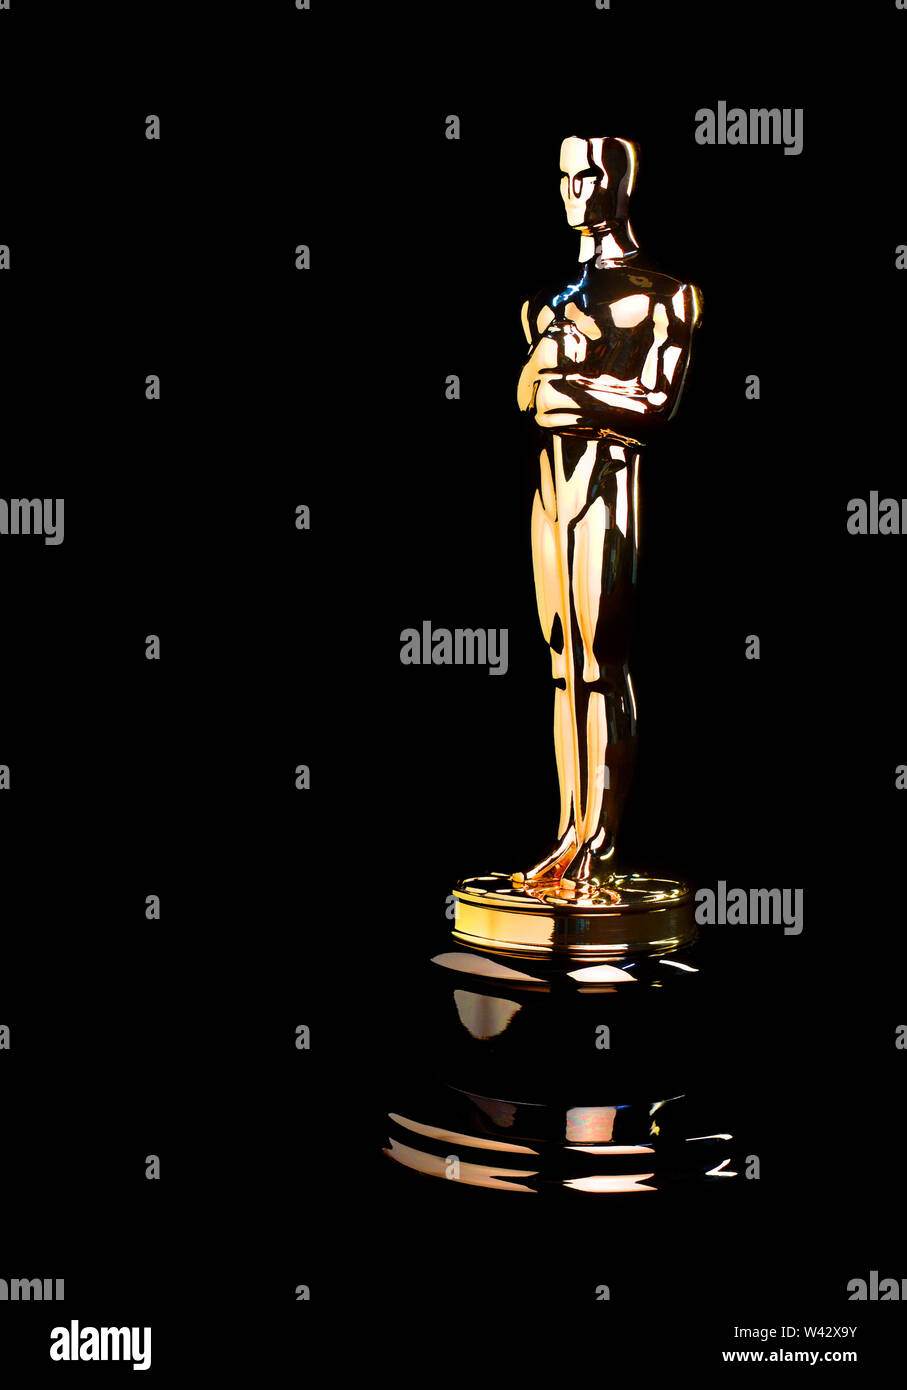 Replica Oscar Statuette Stock Photo